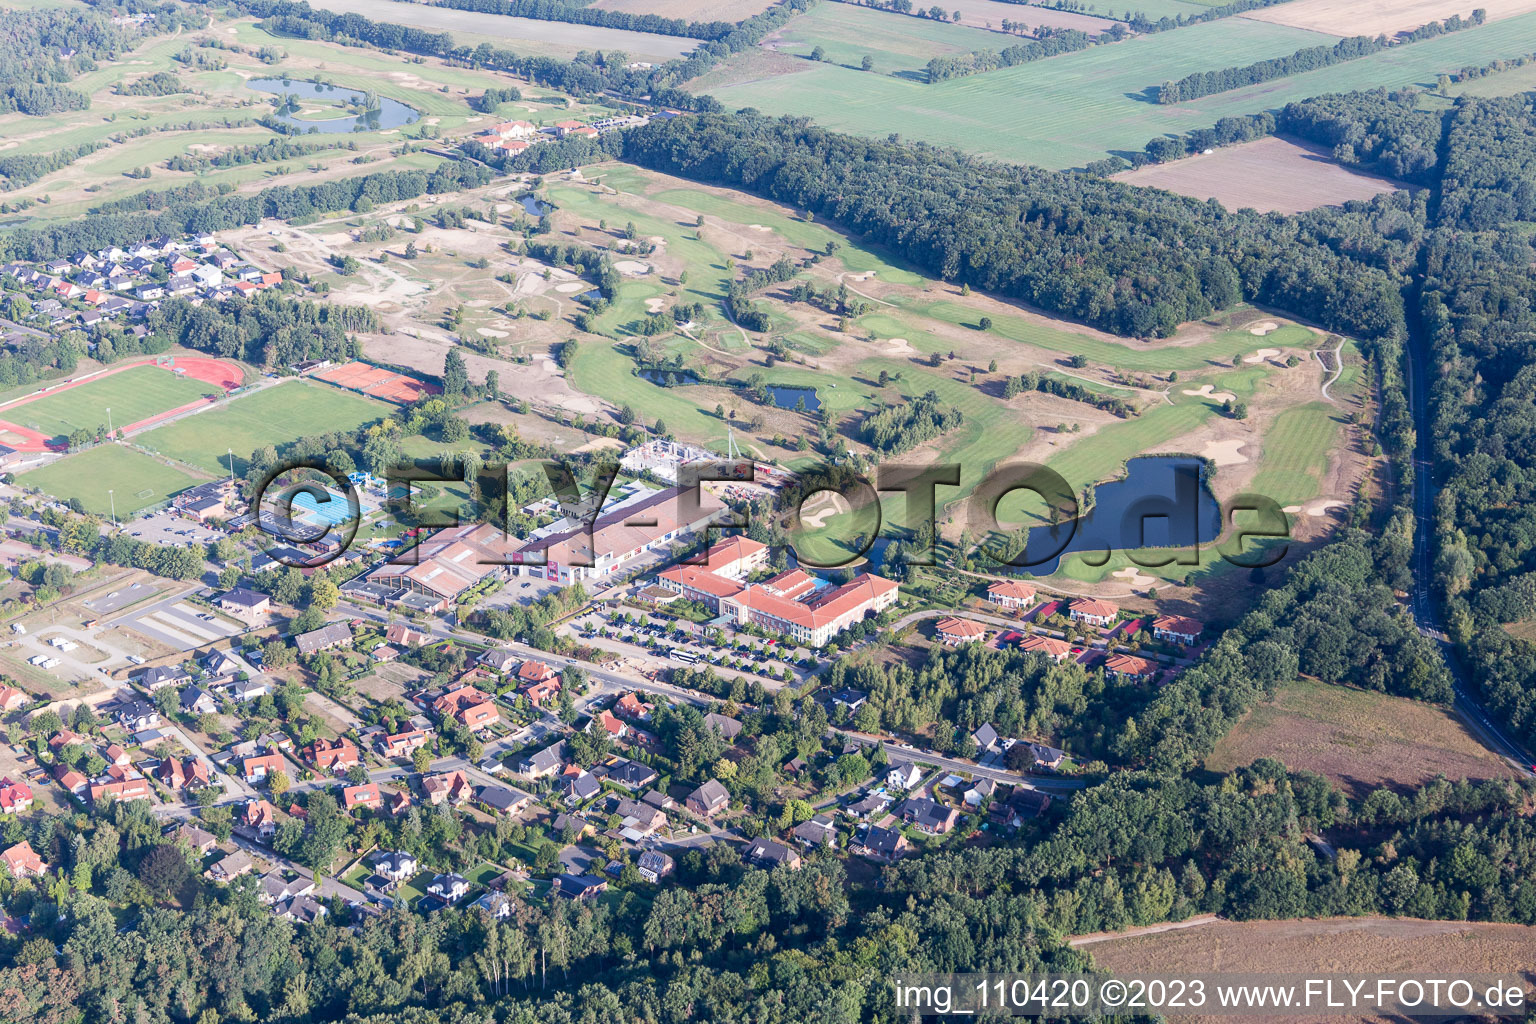 Luftbild von Gelände des Golfplatz Golf Resort Adendorf in Adendorf im Bundesland Niedersachsen, Deutschland